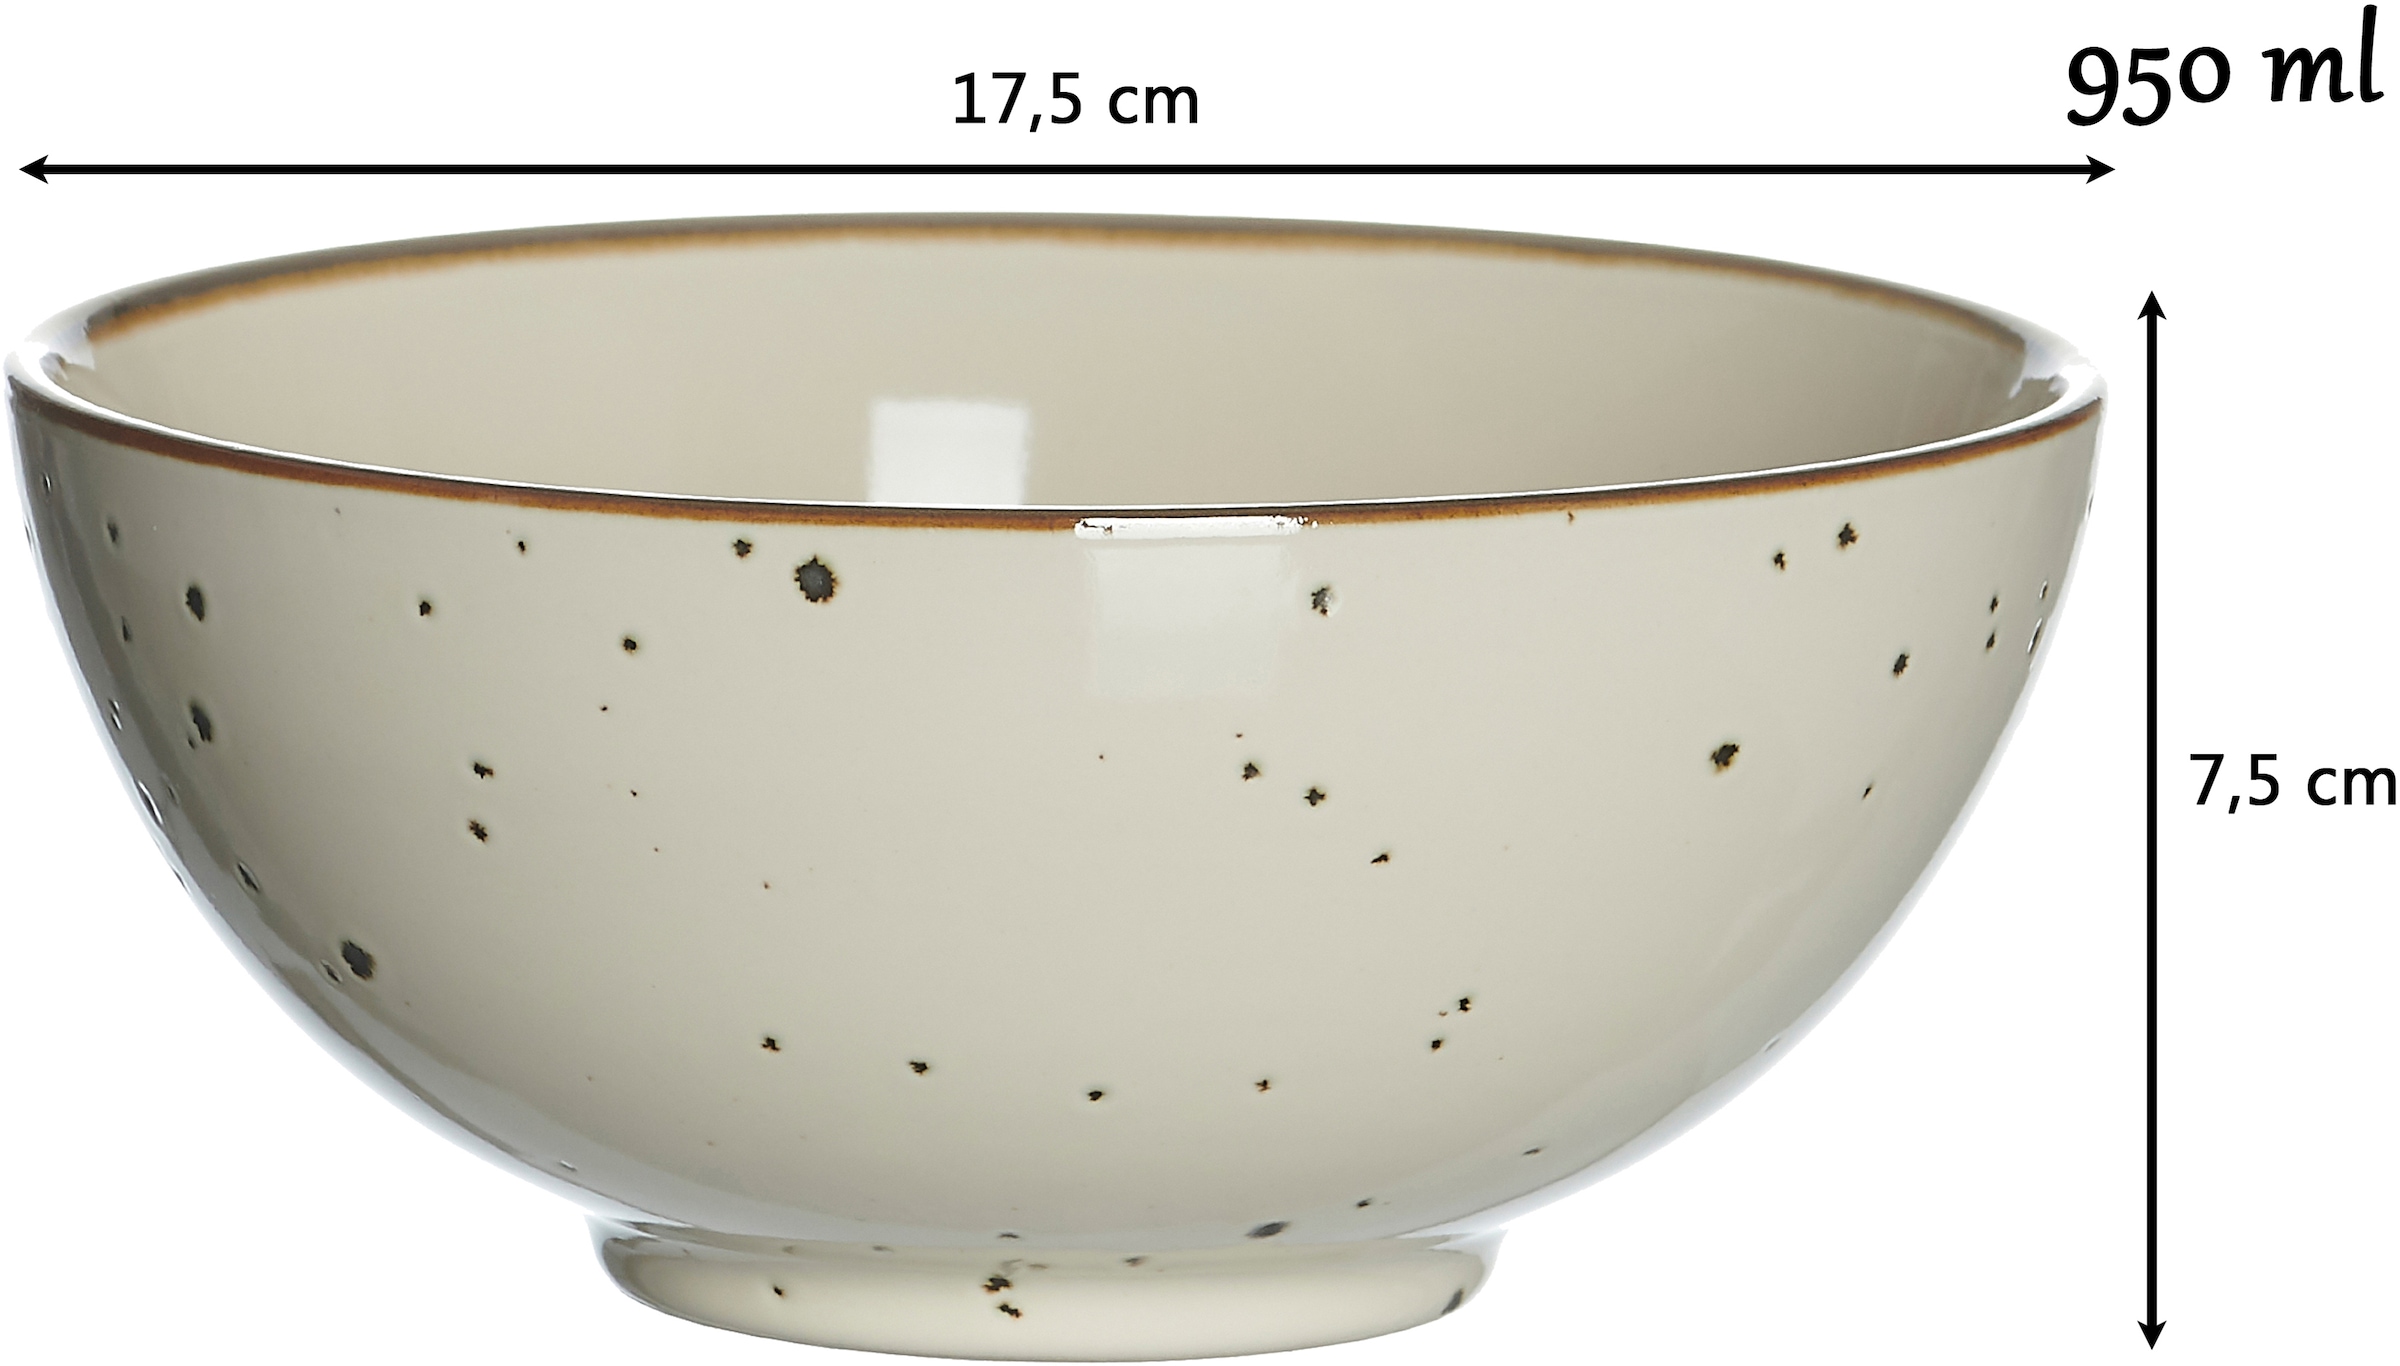 Ritzenhoff & Breker Schale »Xico«, 2 tlg., aus Steinzeug, Buddha-Bowls, Ø 17,5 cm